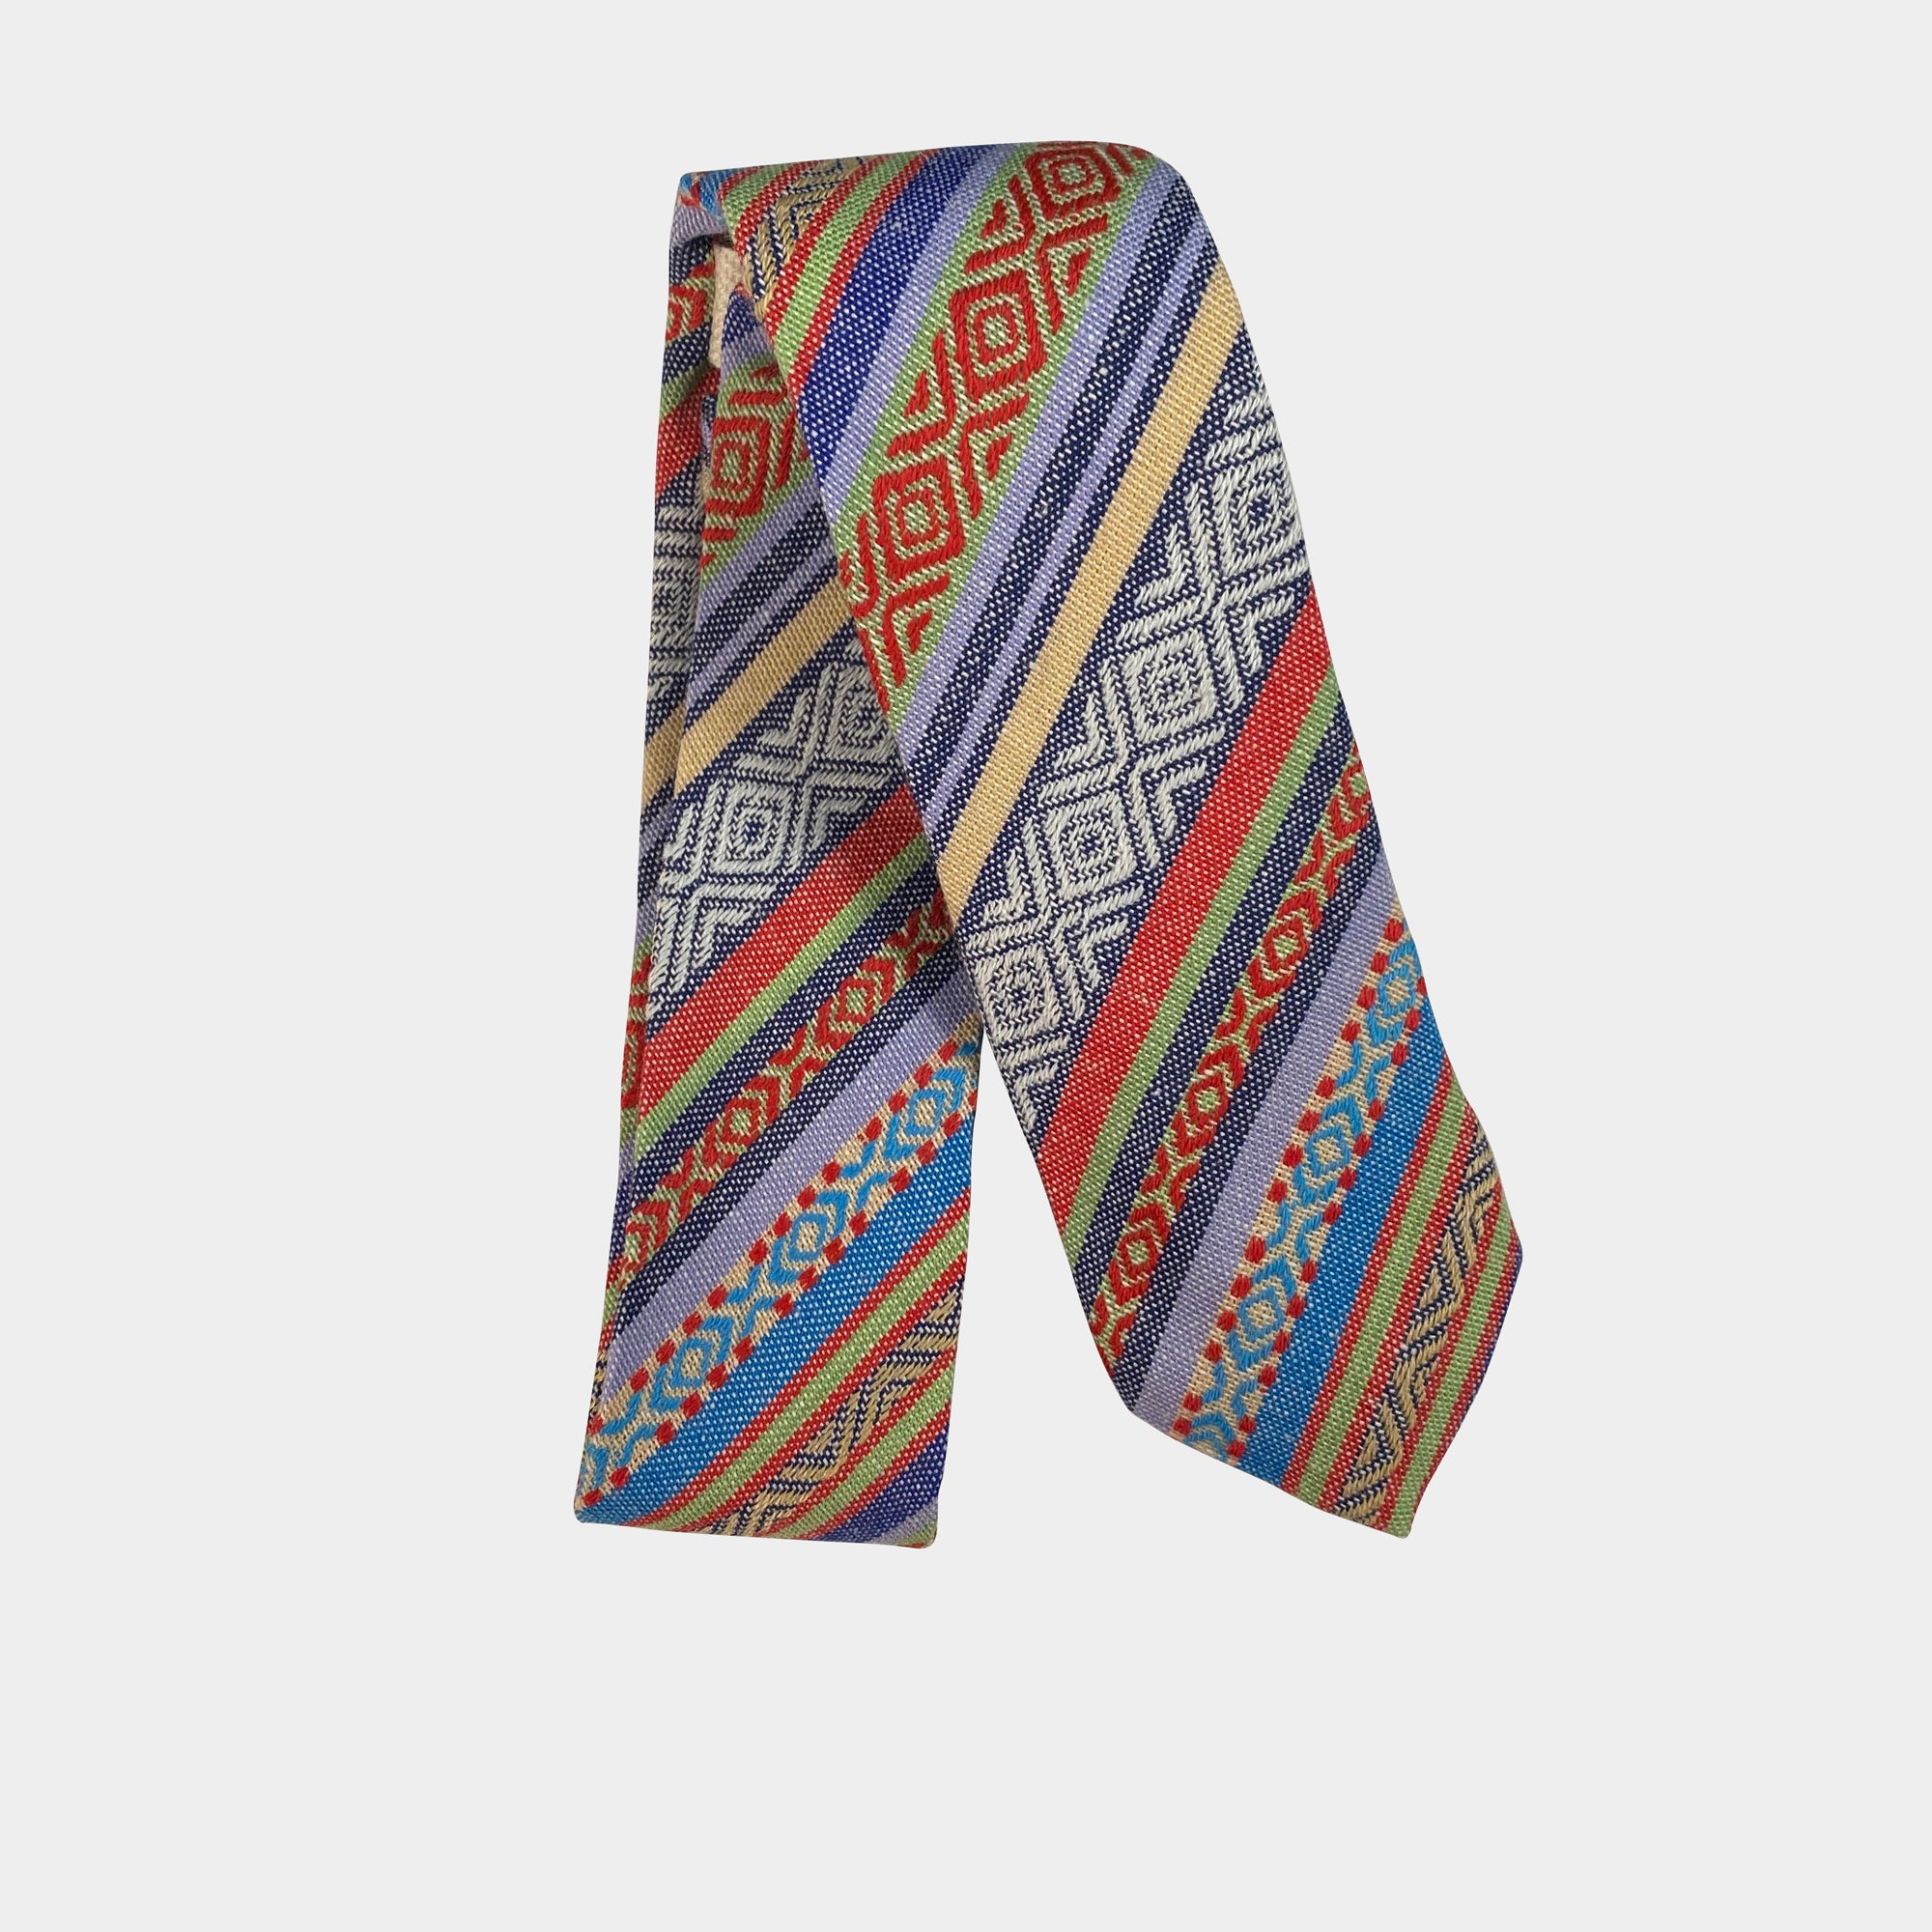 MOJO - Men's Tie